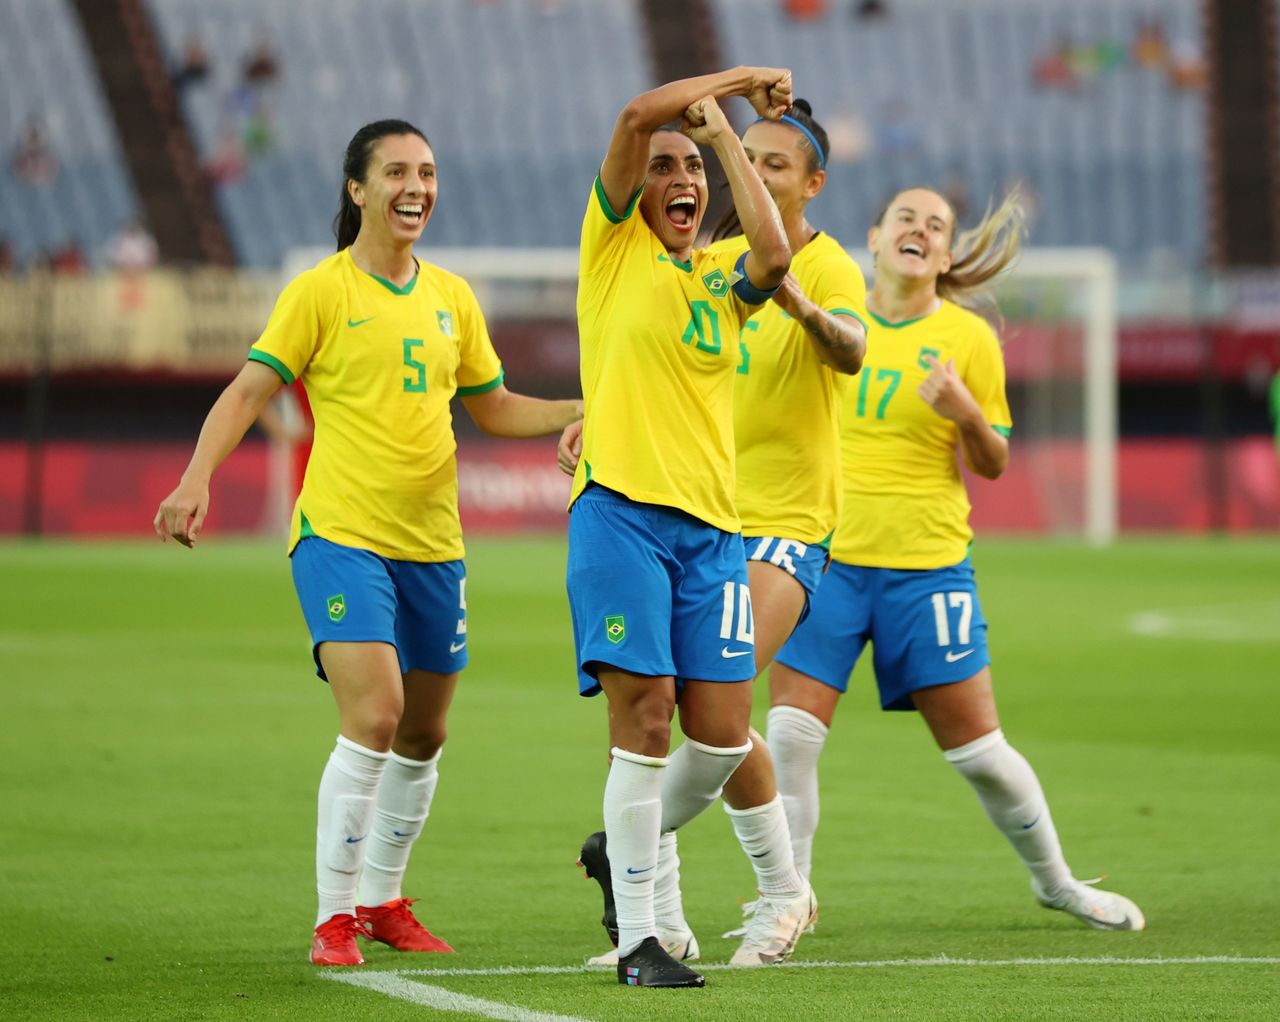 La brasileña Marta celebra luego de anotar el tercer gol de su selección frente a China por el Grupo F de la competencia del fútbol femenino de los Juegos Olímpicos de Tokio 2020 en el Estadio Miyagi de Miyagi, Japón. 21 de julio, 2021. REUTERS/Molly Darlington